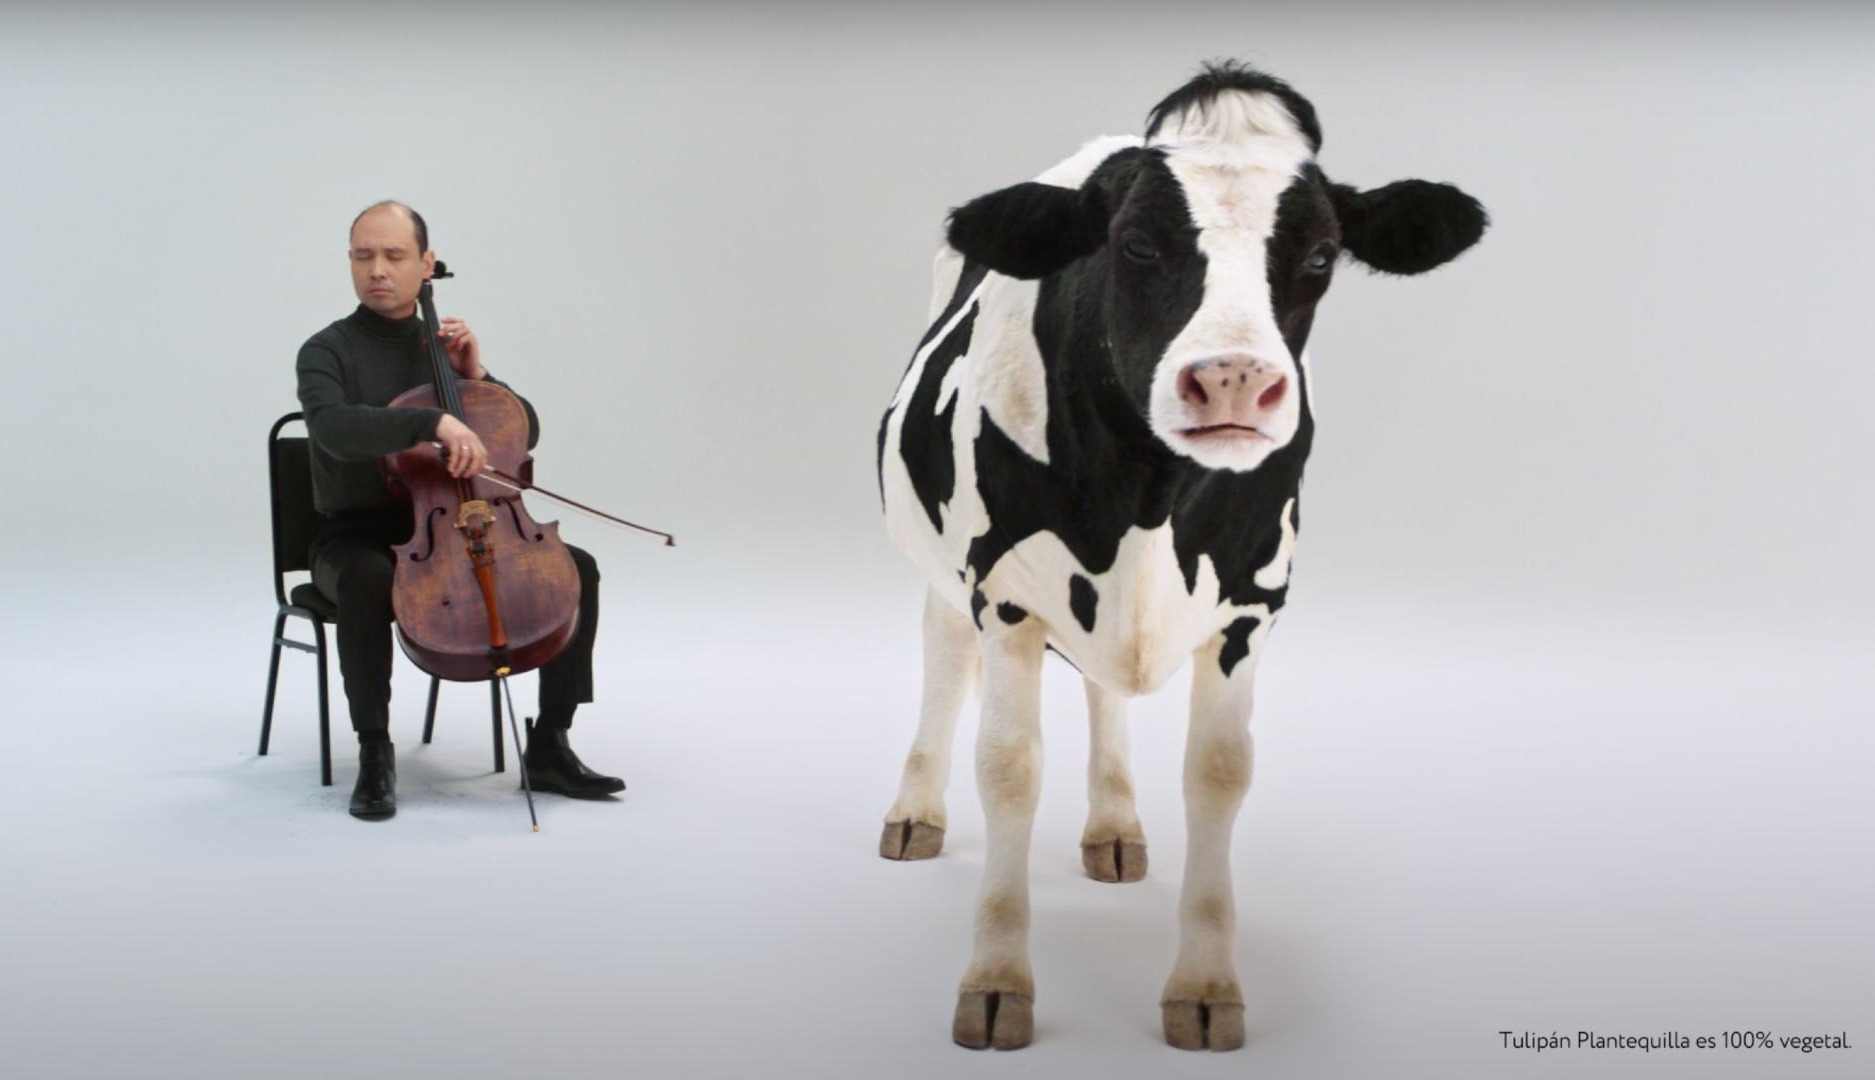 Fotograma de la campaña "Skip the cow" de Tulipán